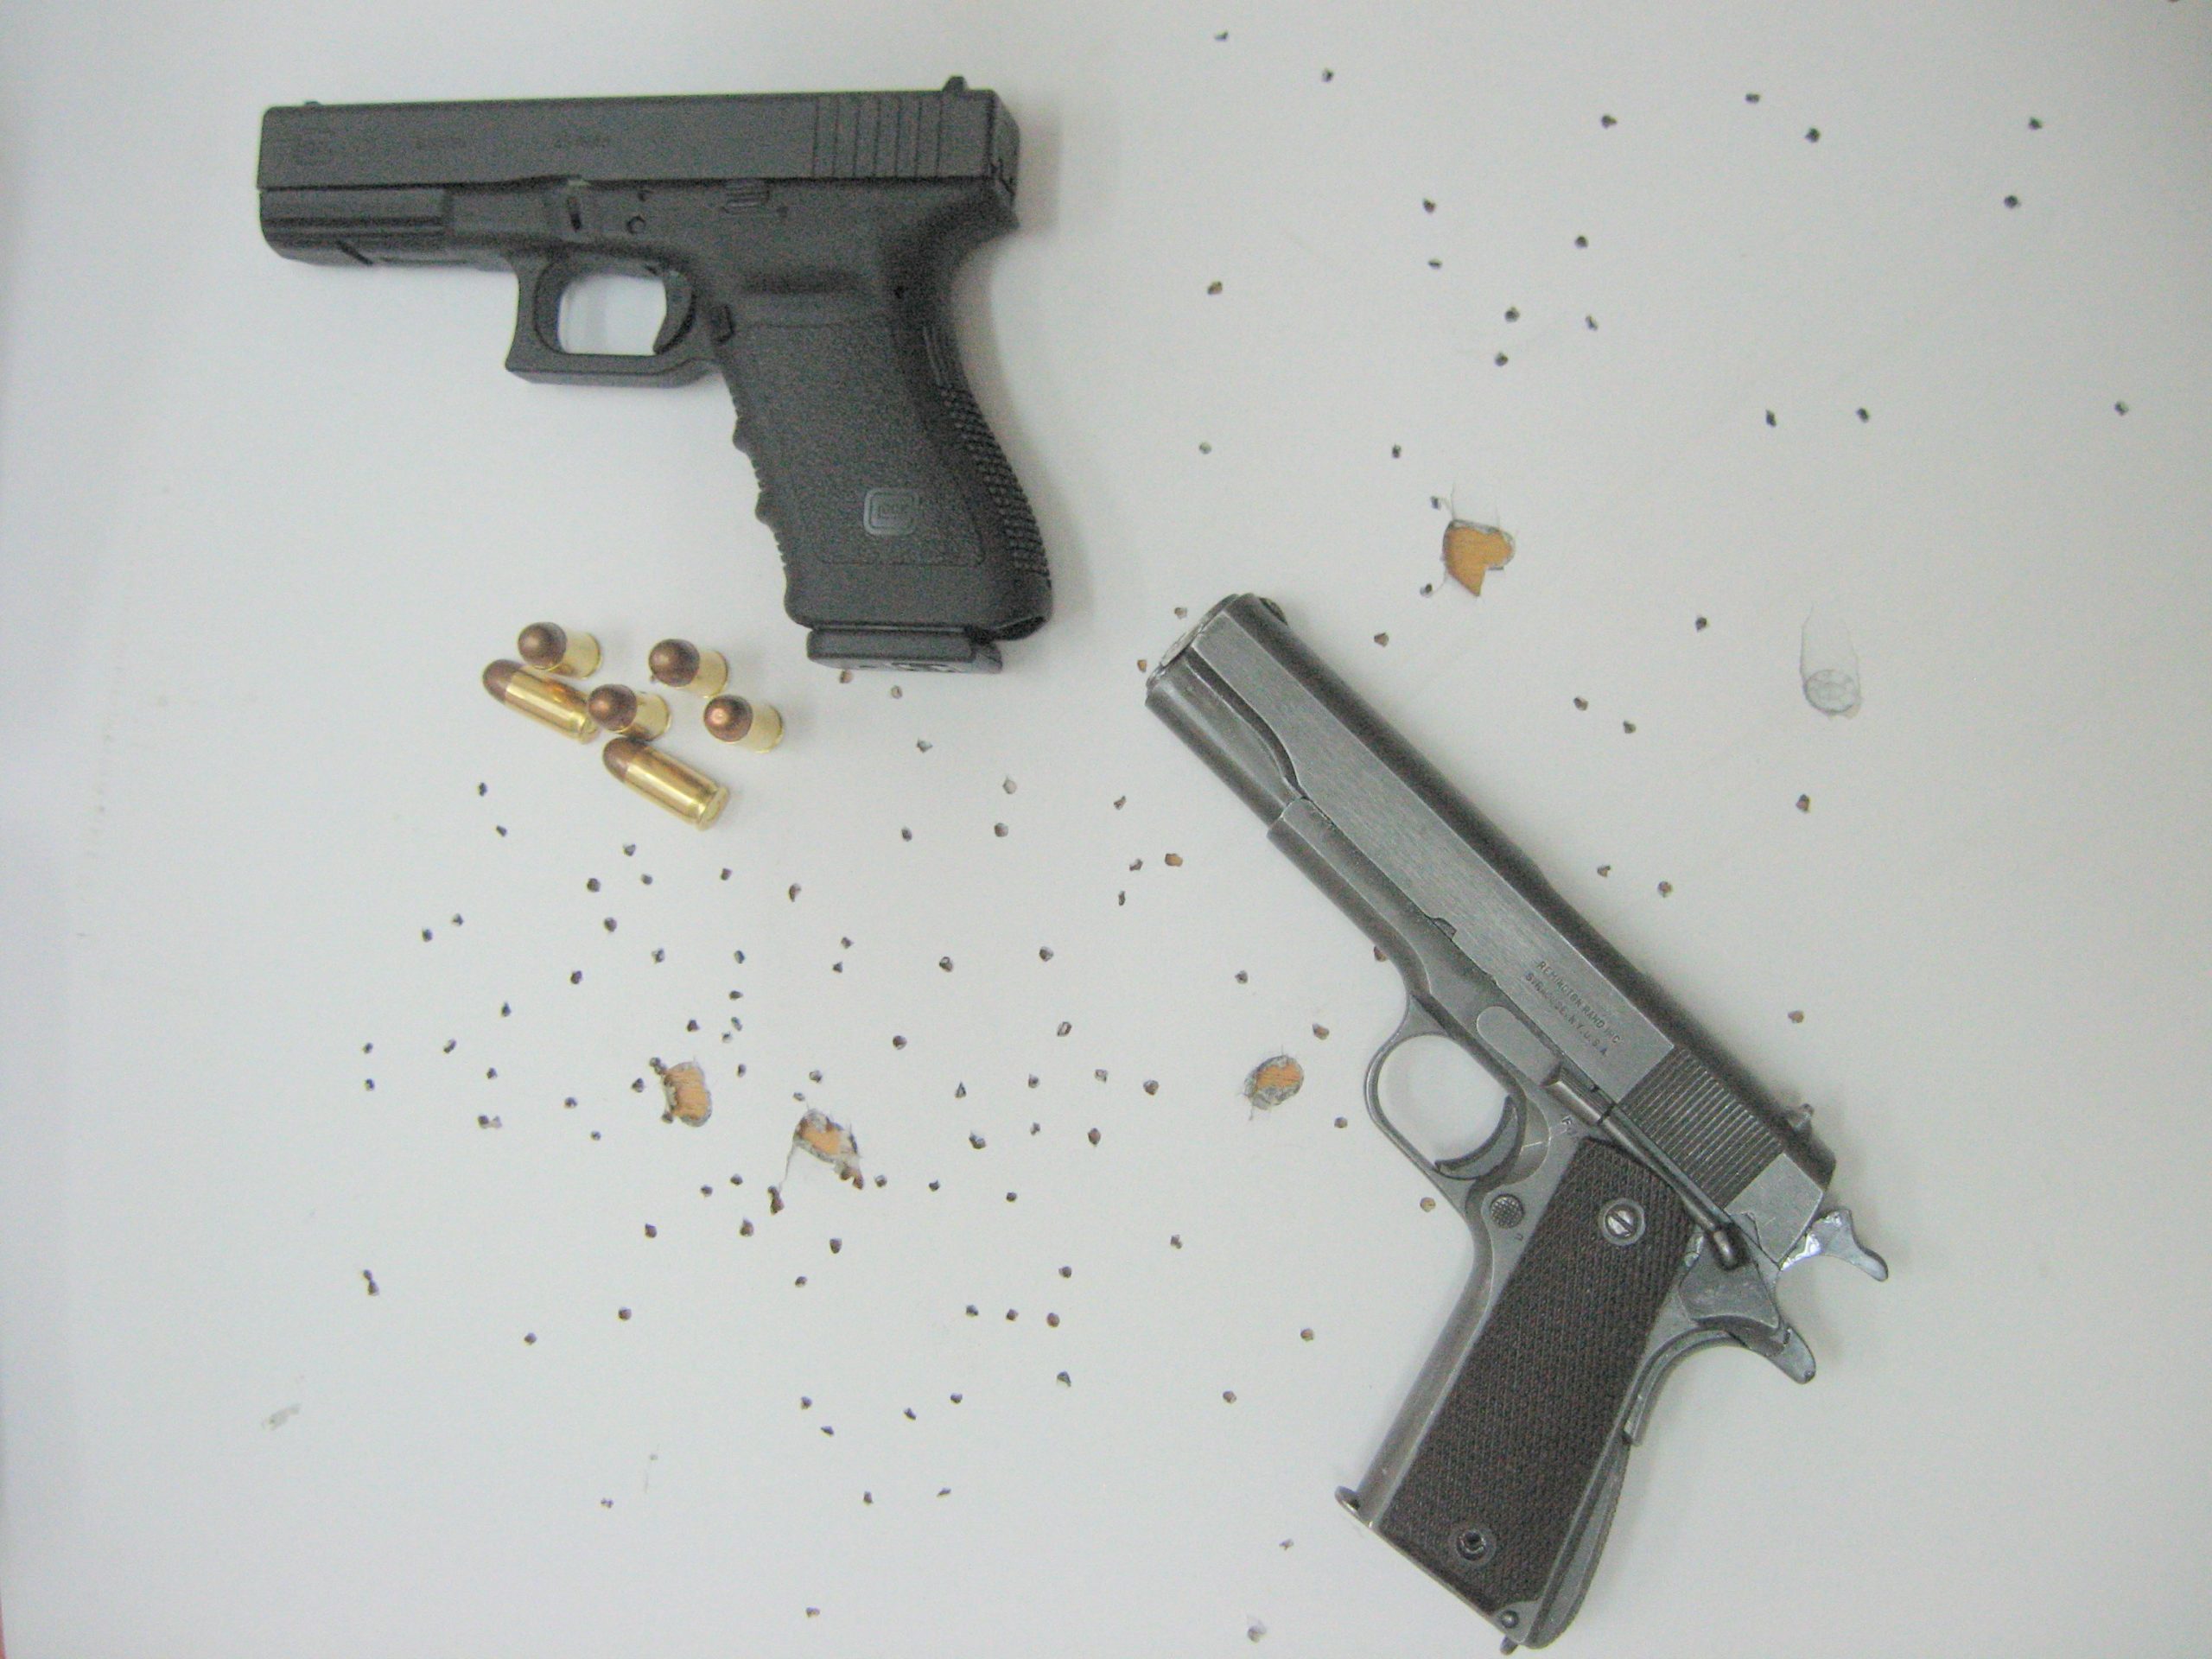 Novi-sacmeni-metak1.45-ACP-oprobali-smo-u-dva-najcesca-pistolja-tog-kalibra-Colt-1911A1-i-Glo-scaled.jpg